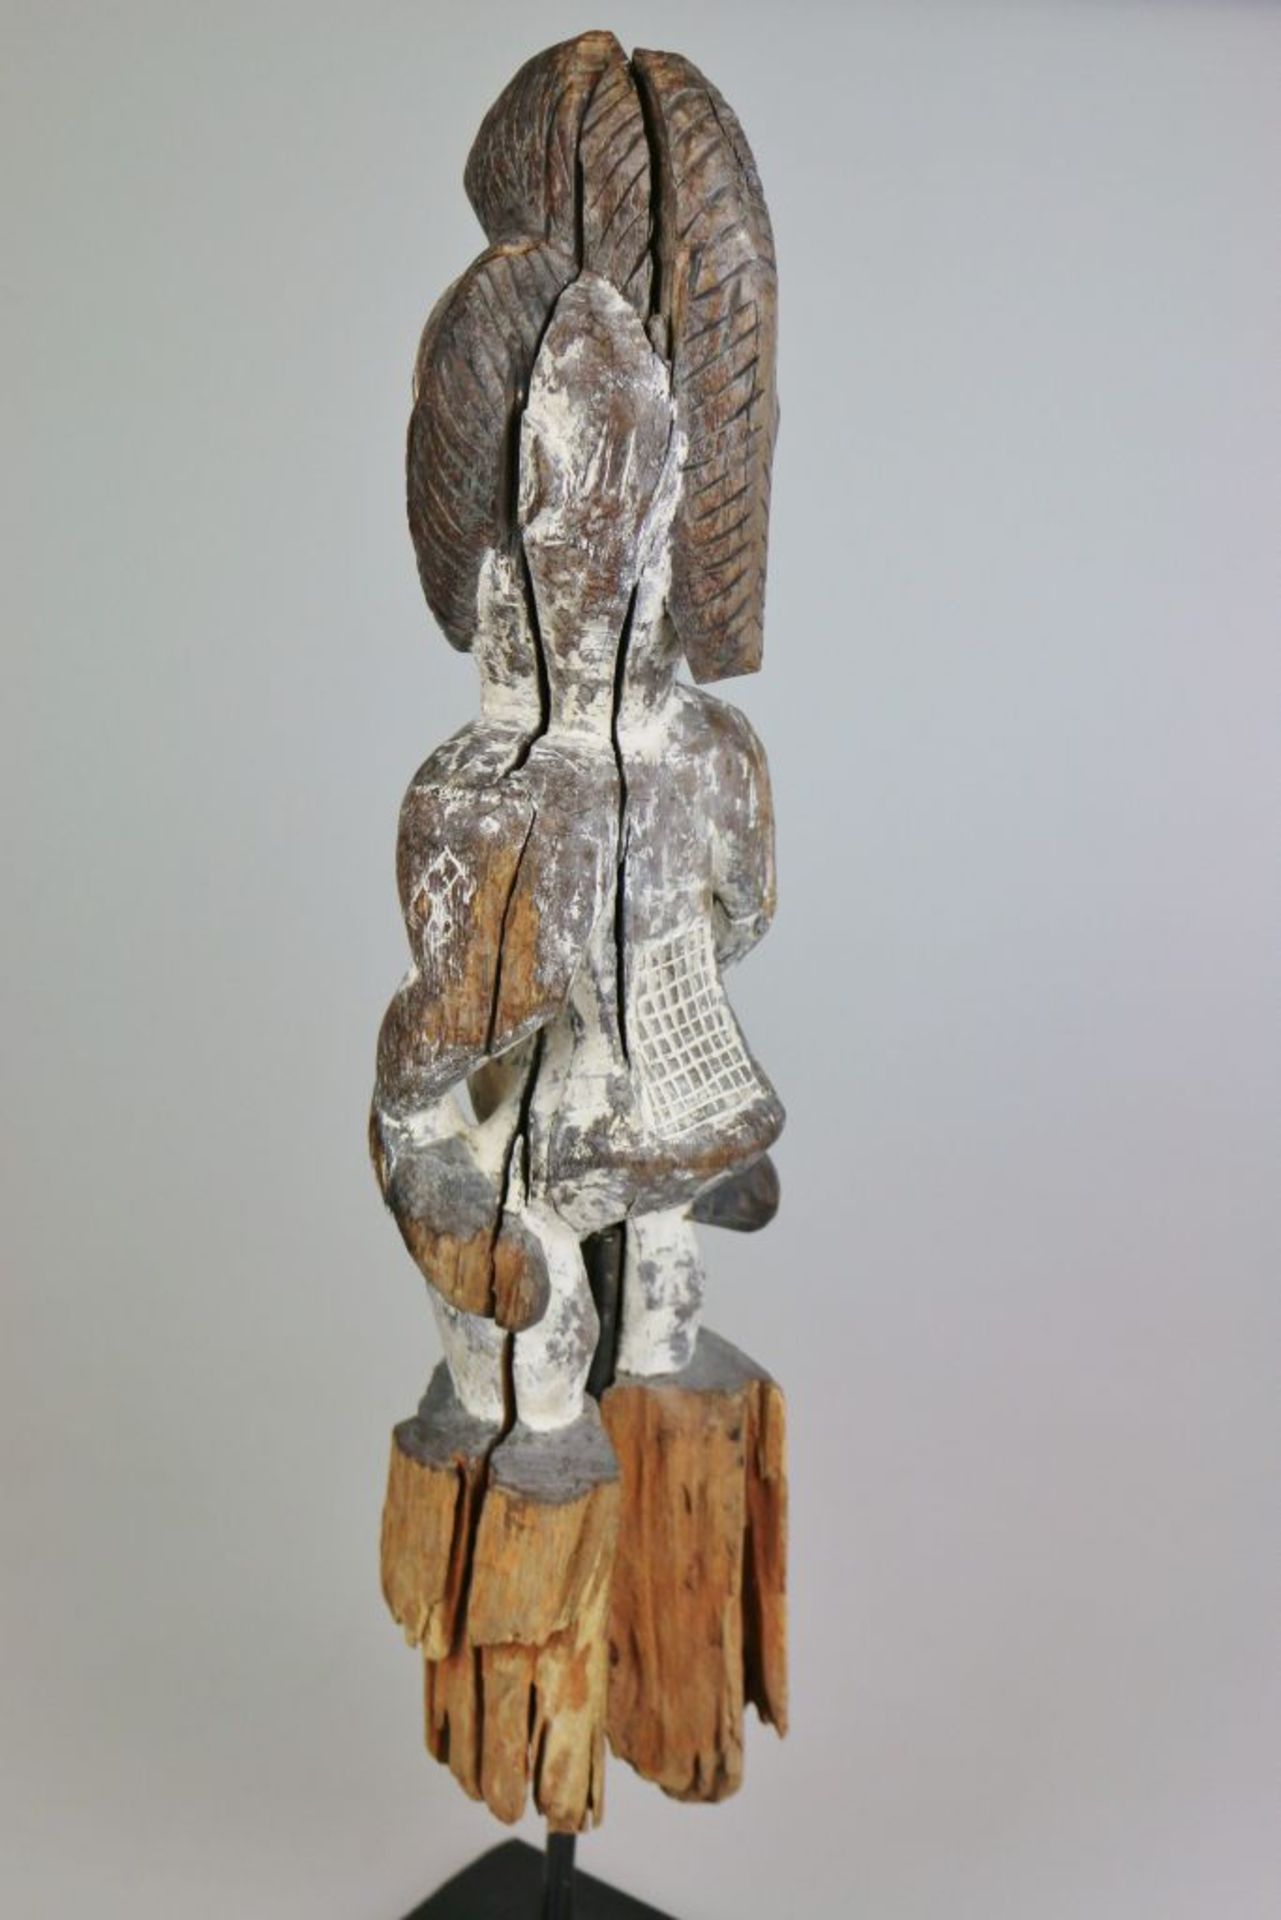 PUNU Figur, GABUN, Holz, gefasst. Wächterfigur "okuyi" der Punu, mit Resten alter Kaolinfassung. - Bild 3 aus 4